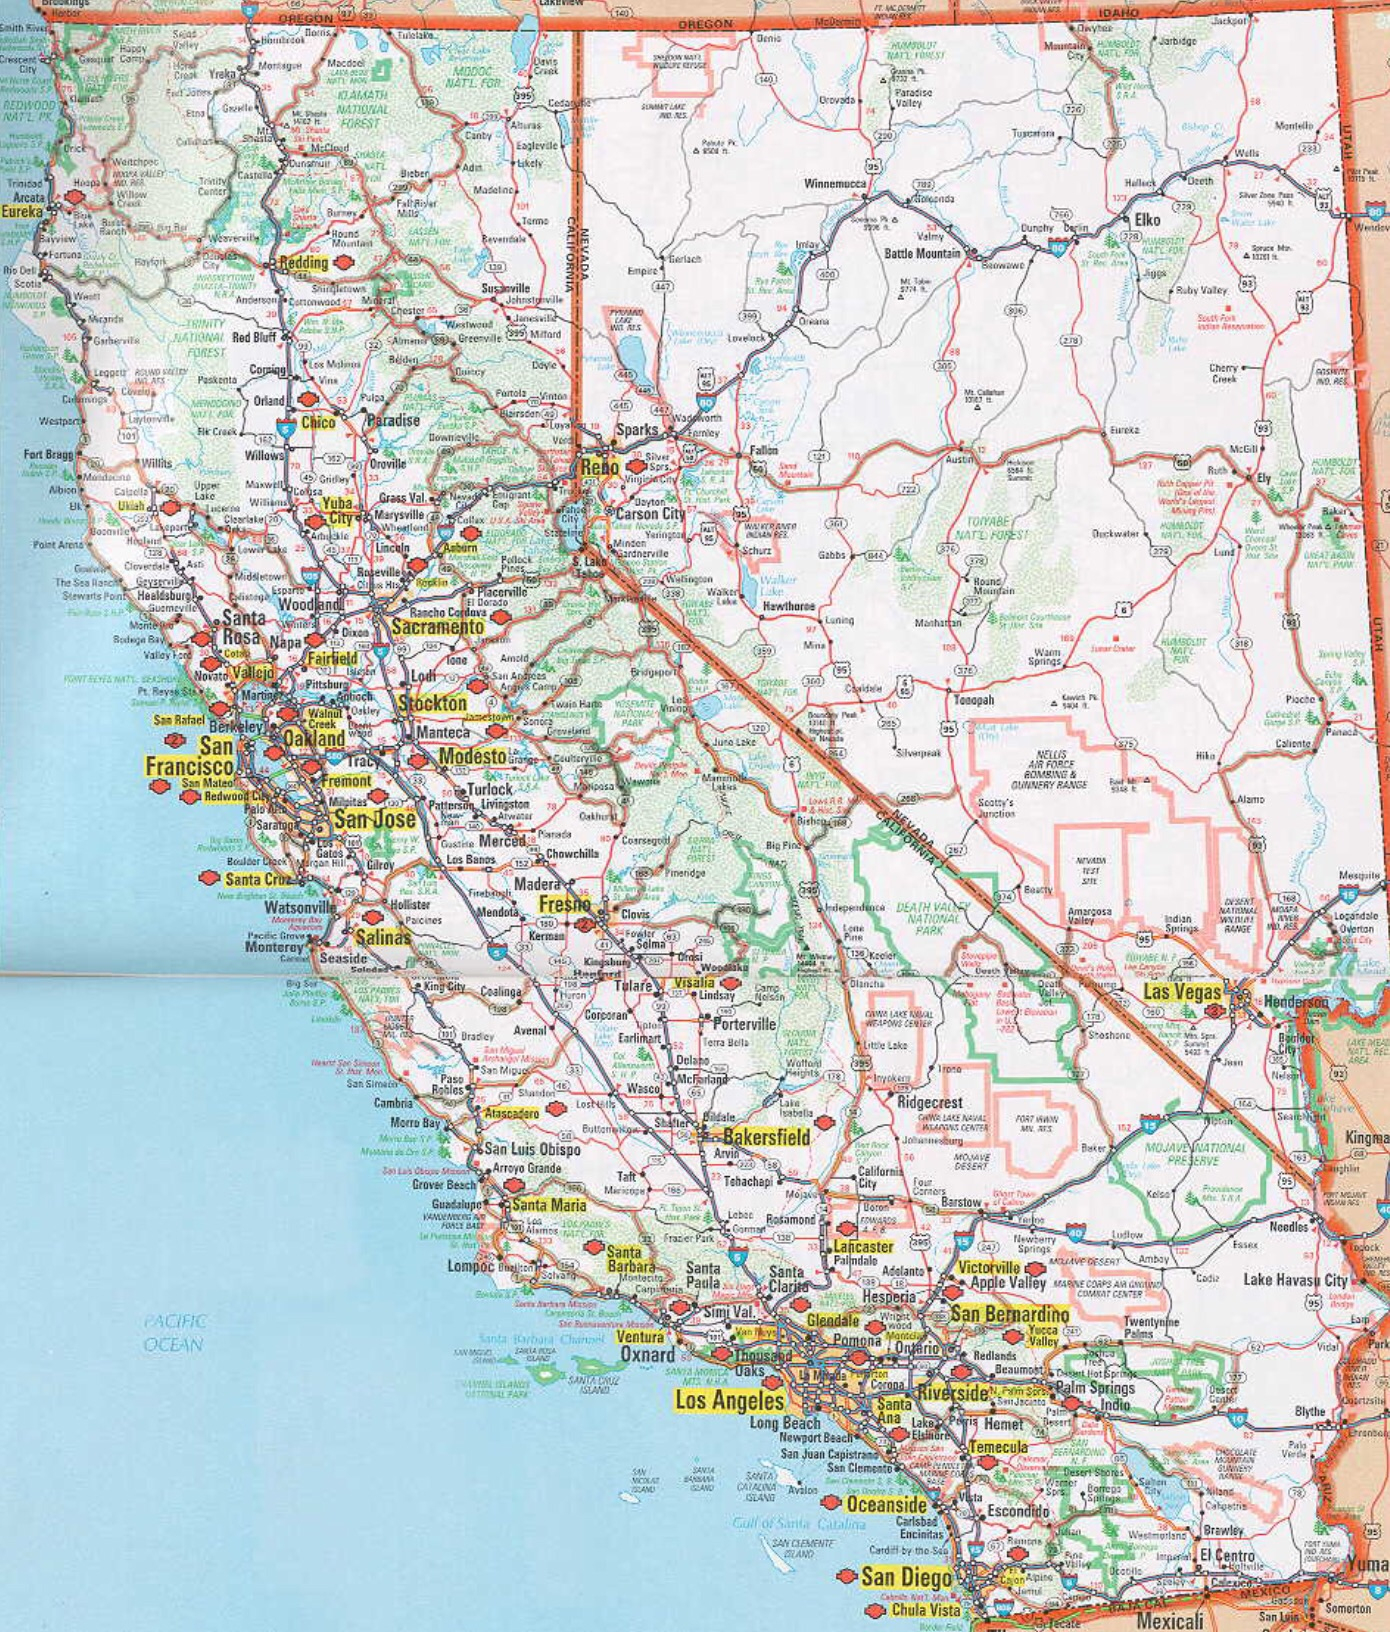 Mcfarland California Map - Touran - Mcfarland California Map